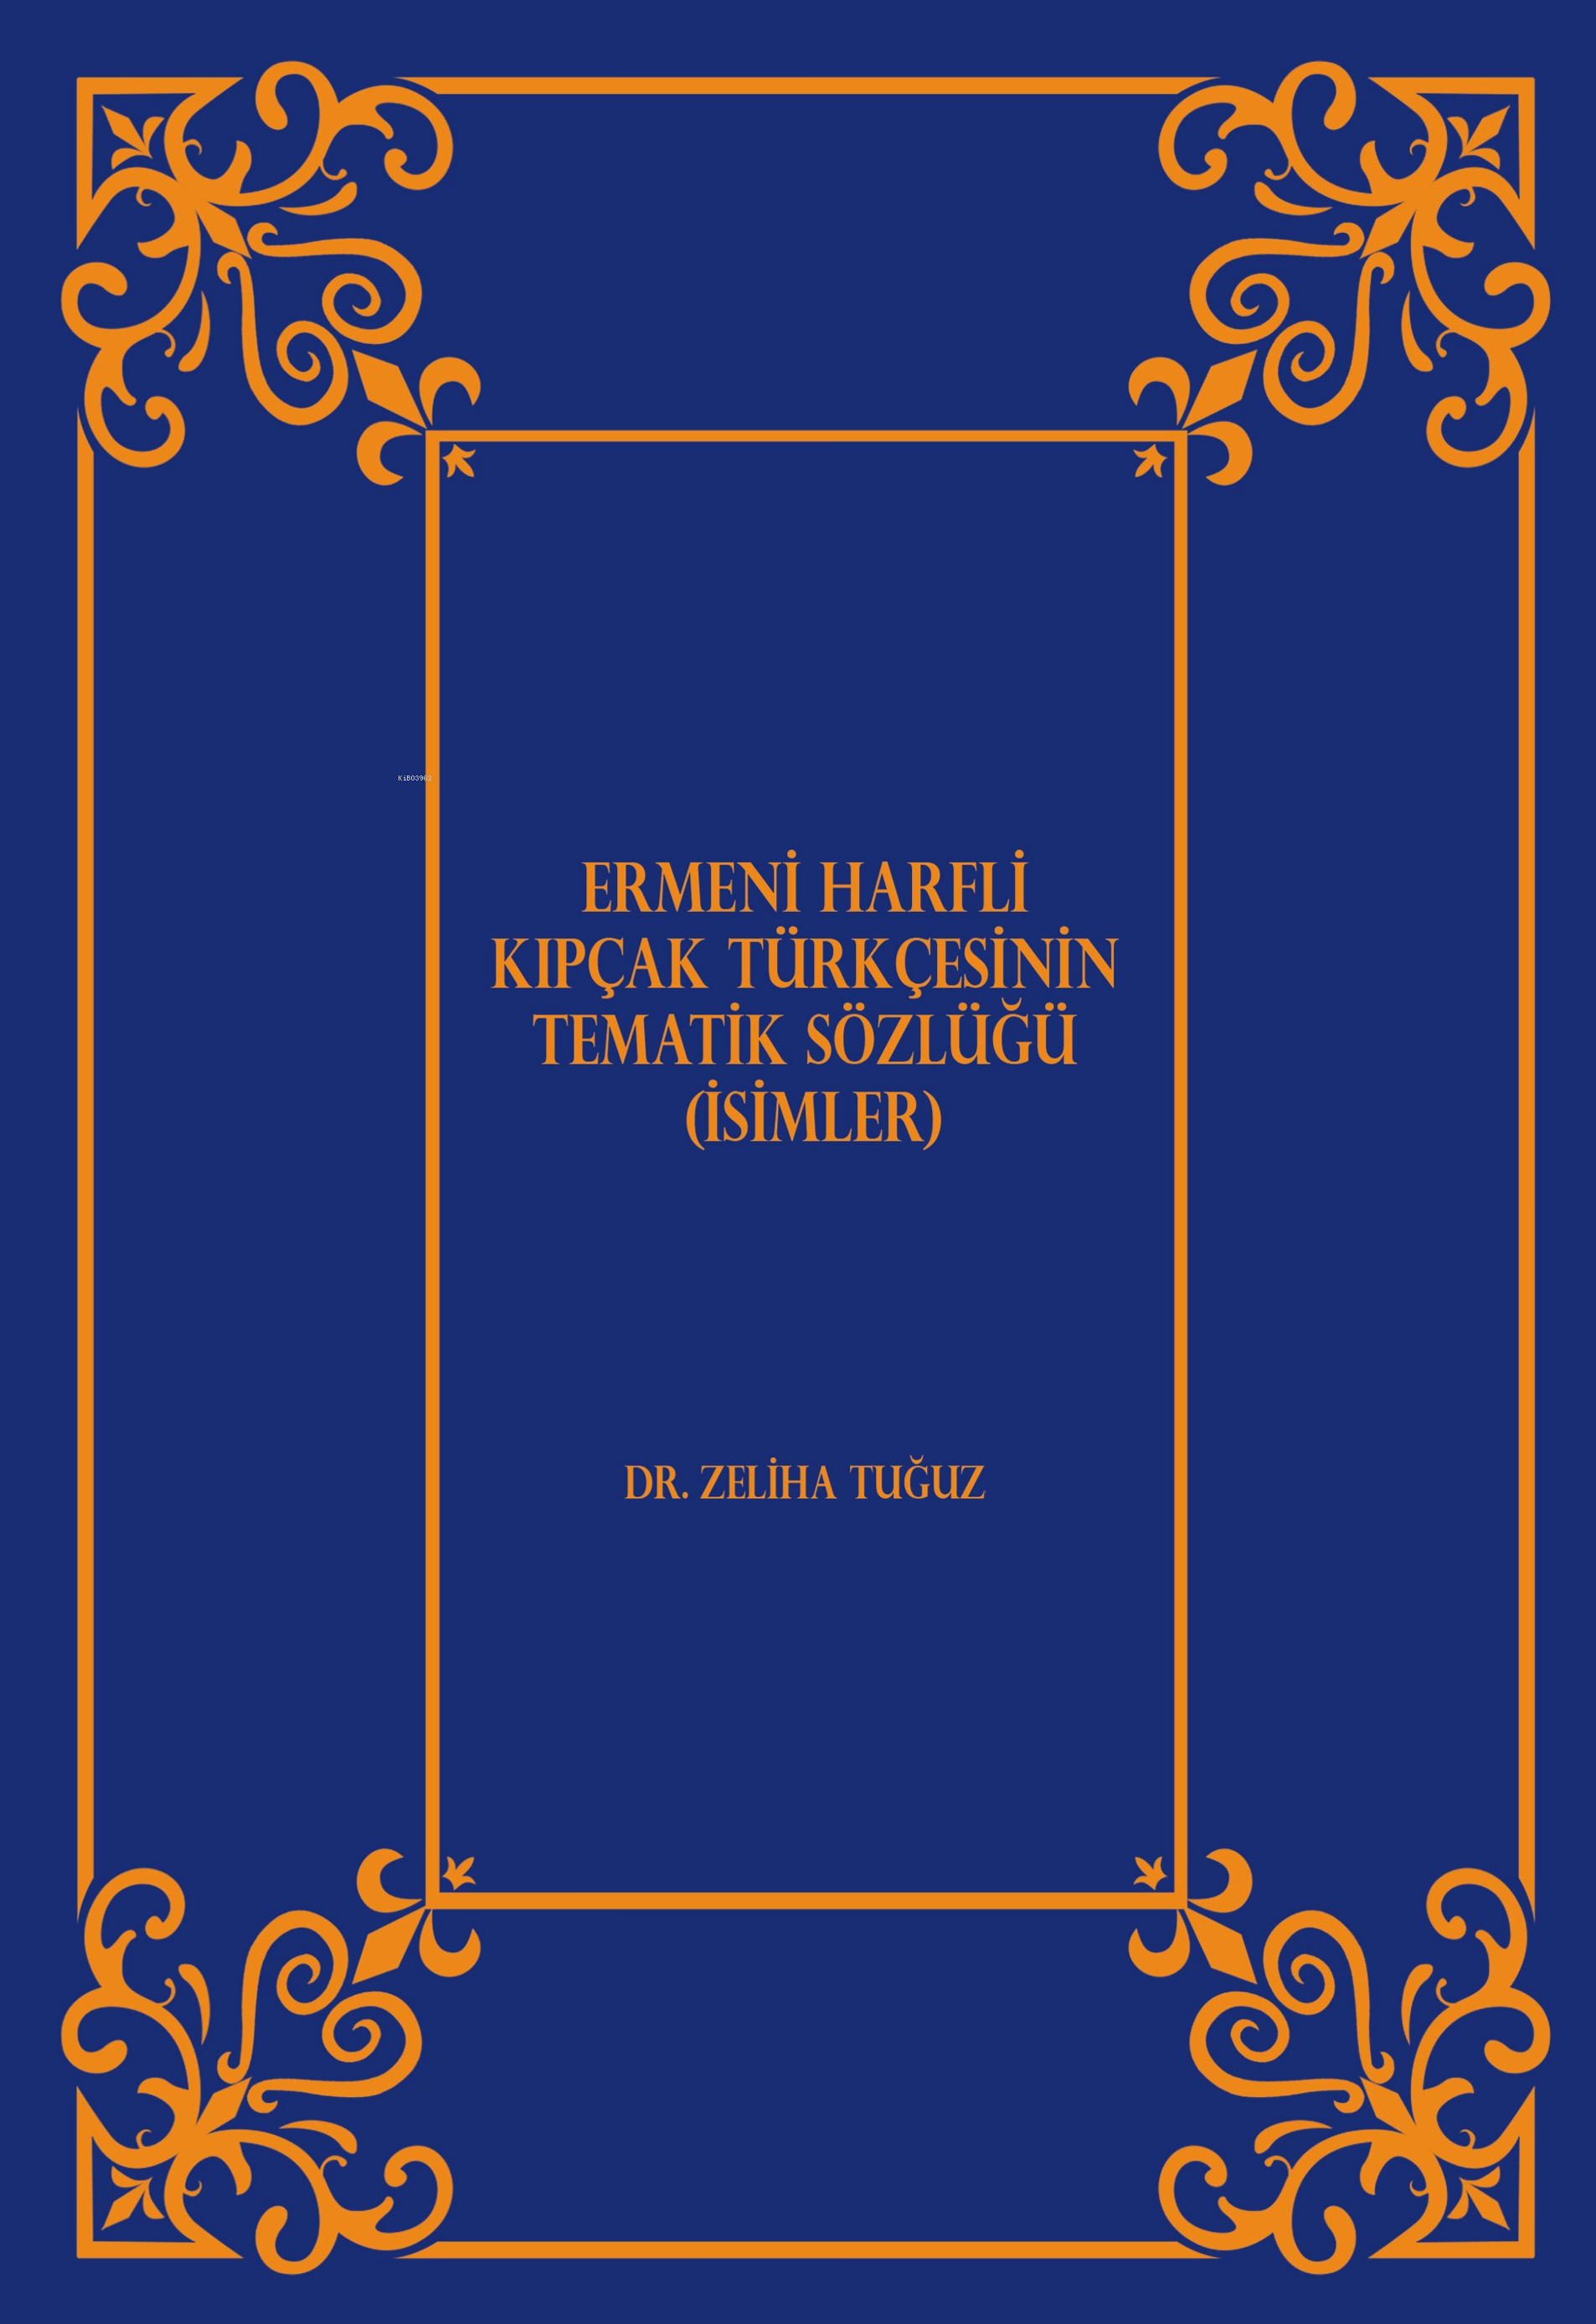 Ermeni Harfli Kıpçak Türkçesinin Tematik Sözlüğü (İsimler)